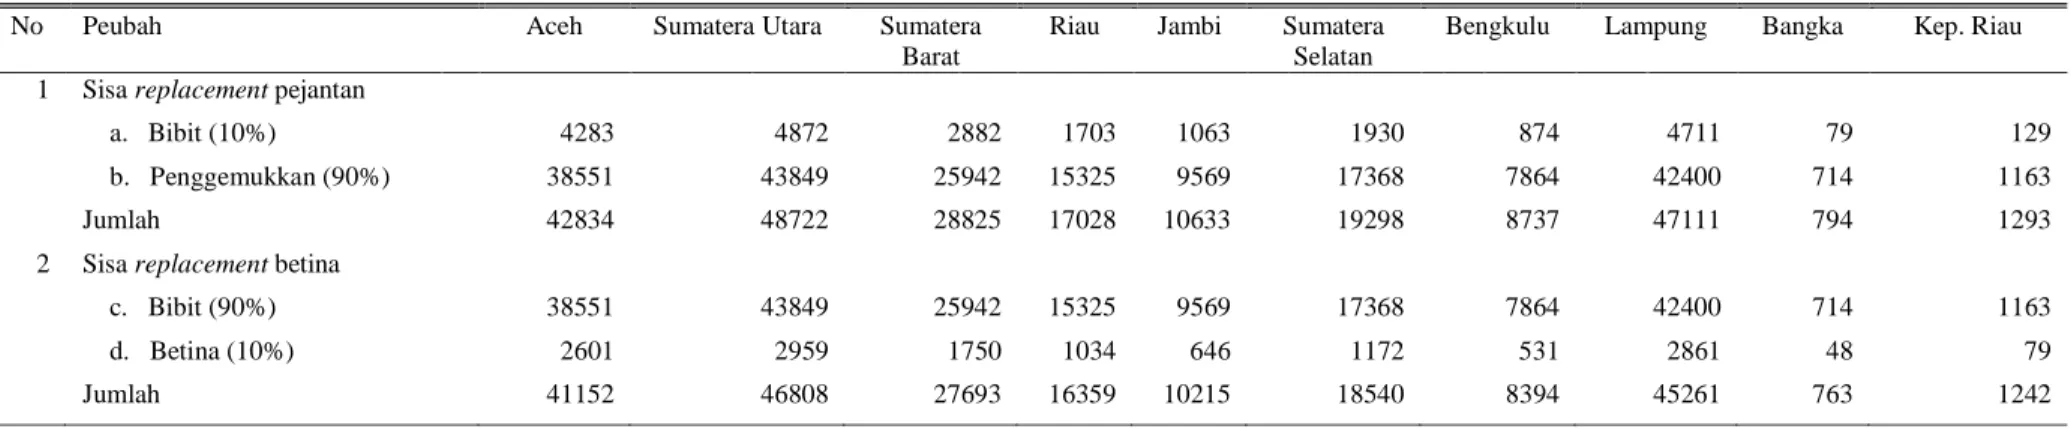 Tabel 6. Rincian sisa replacement sapi potong di Sumatera berdasarkan provinsi 